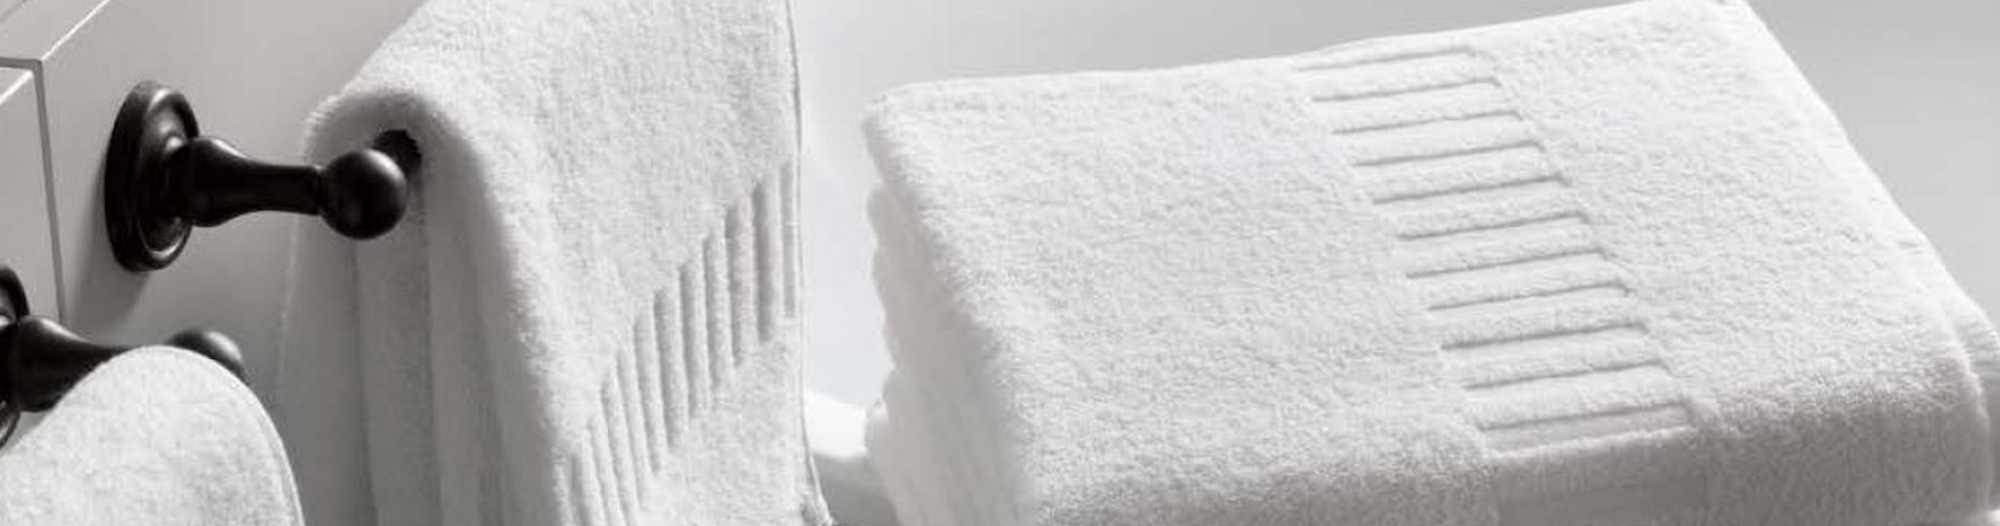 Gants de toilette hôtellerie haut de gamme - IMAGINE - Comptoir Textile